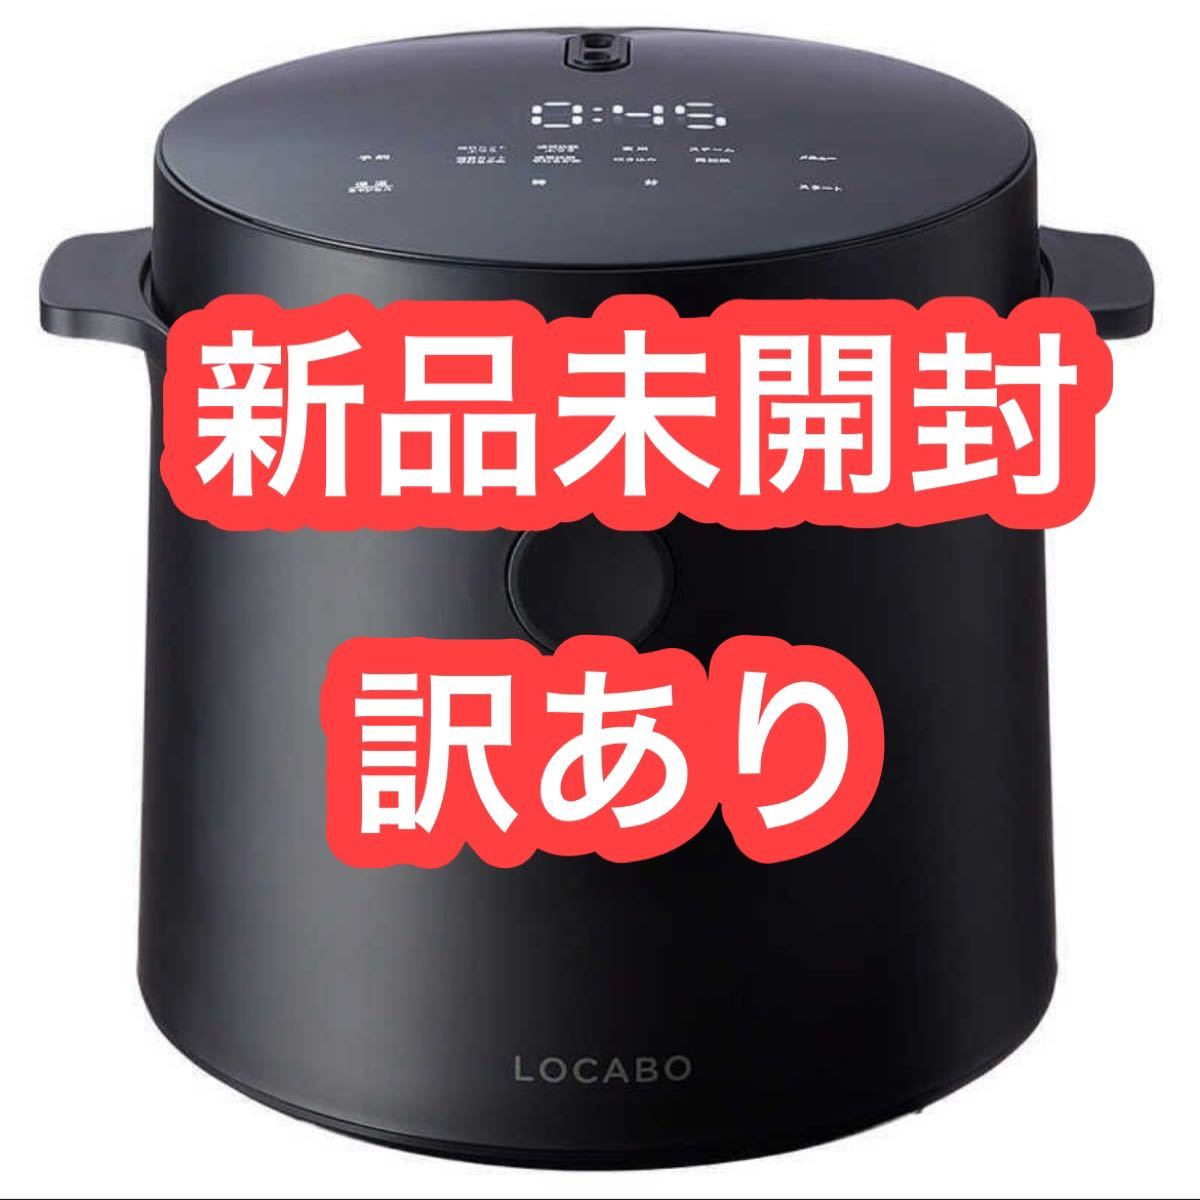 新製品情報も満載 【新品未使用】ロカボ 糖質カット炊飯器LOCABO JM-C20E-B ブラック - 炊飯器